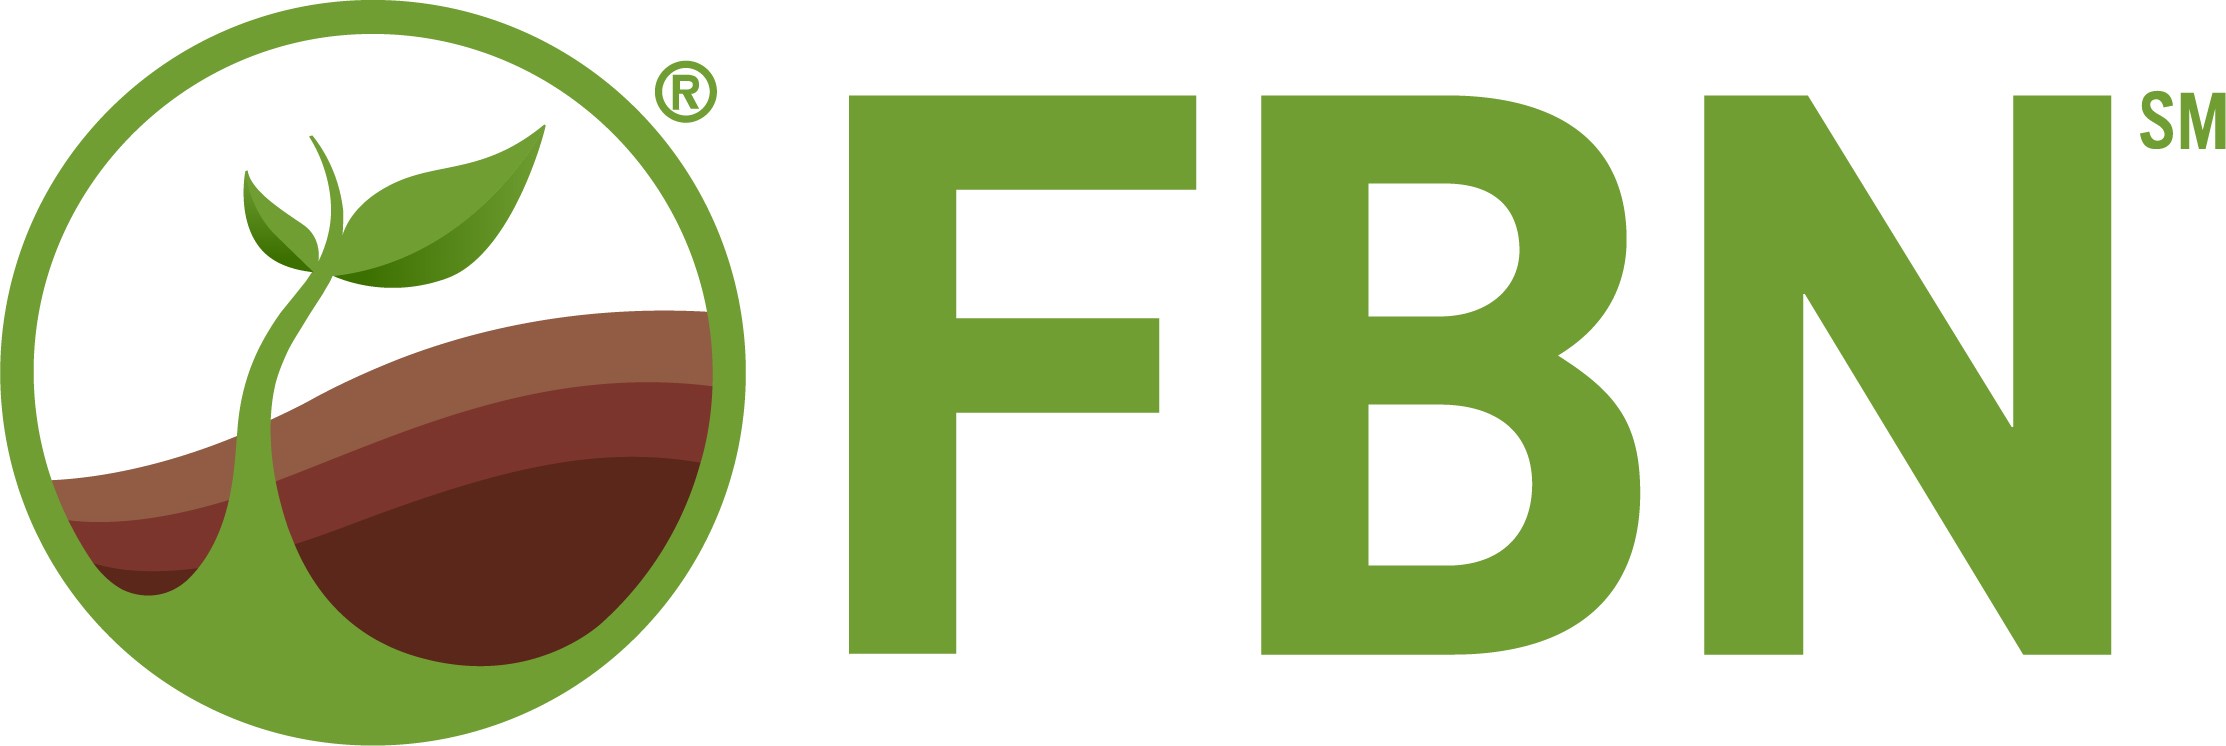 Farmer business network logo